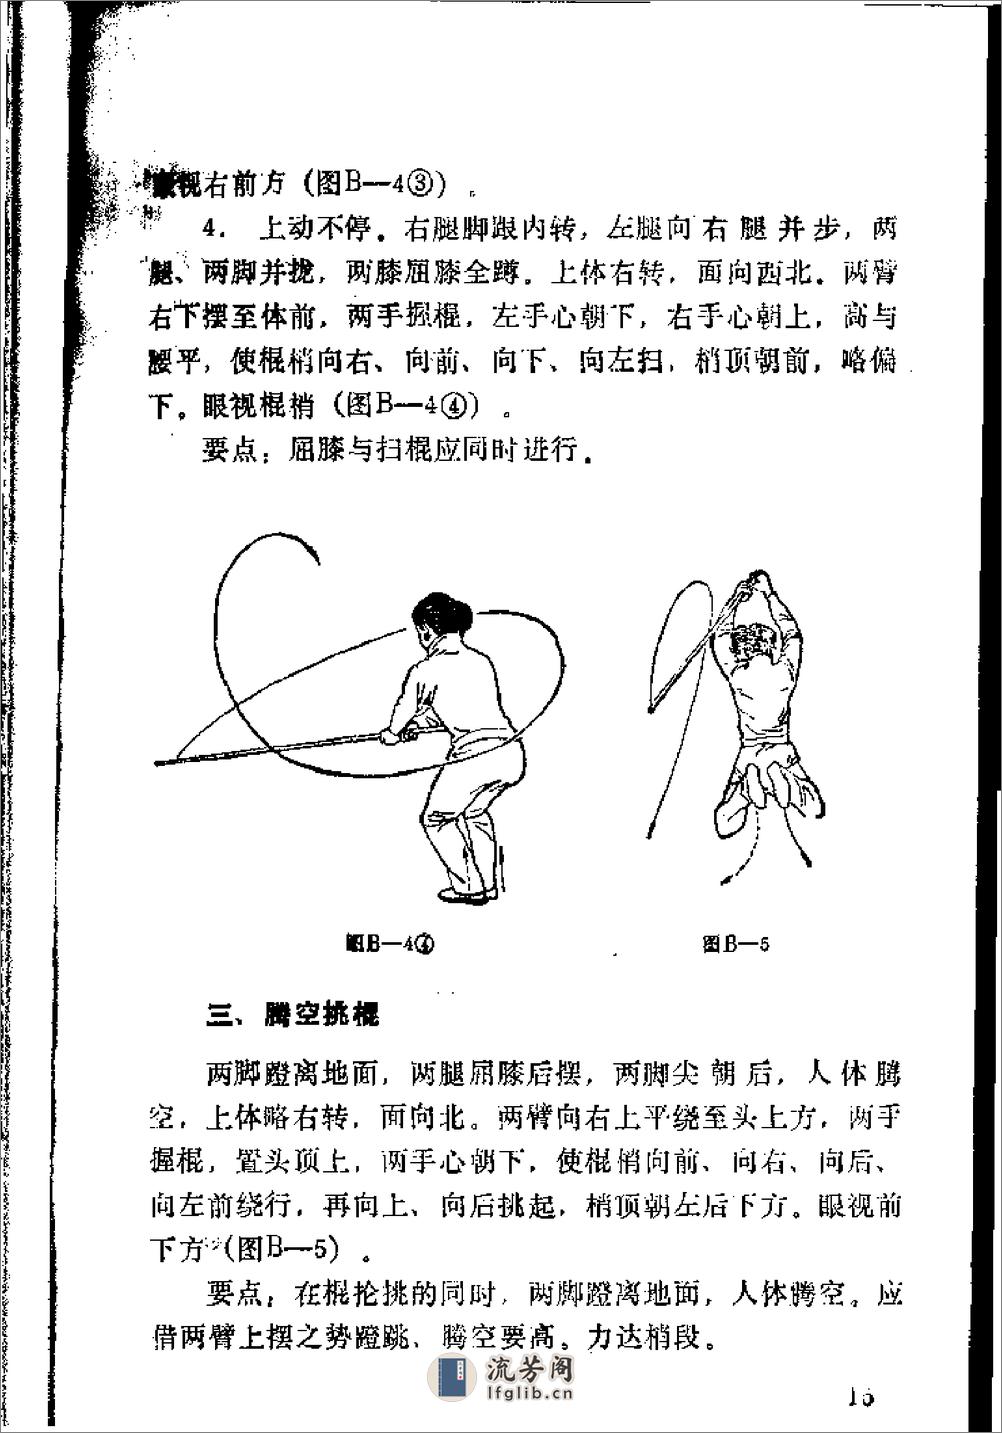 《紫宣棍》王培锟 - 第17页预览图